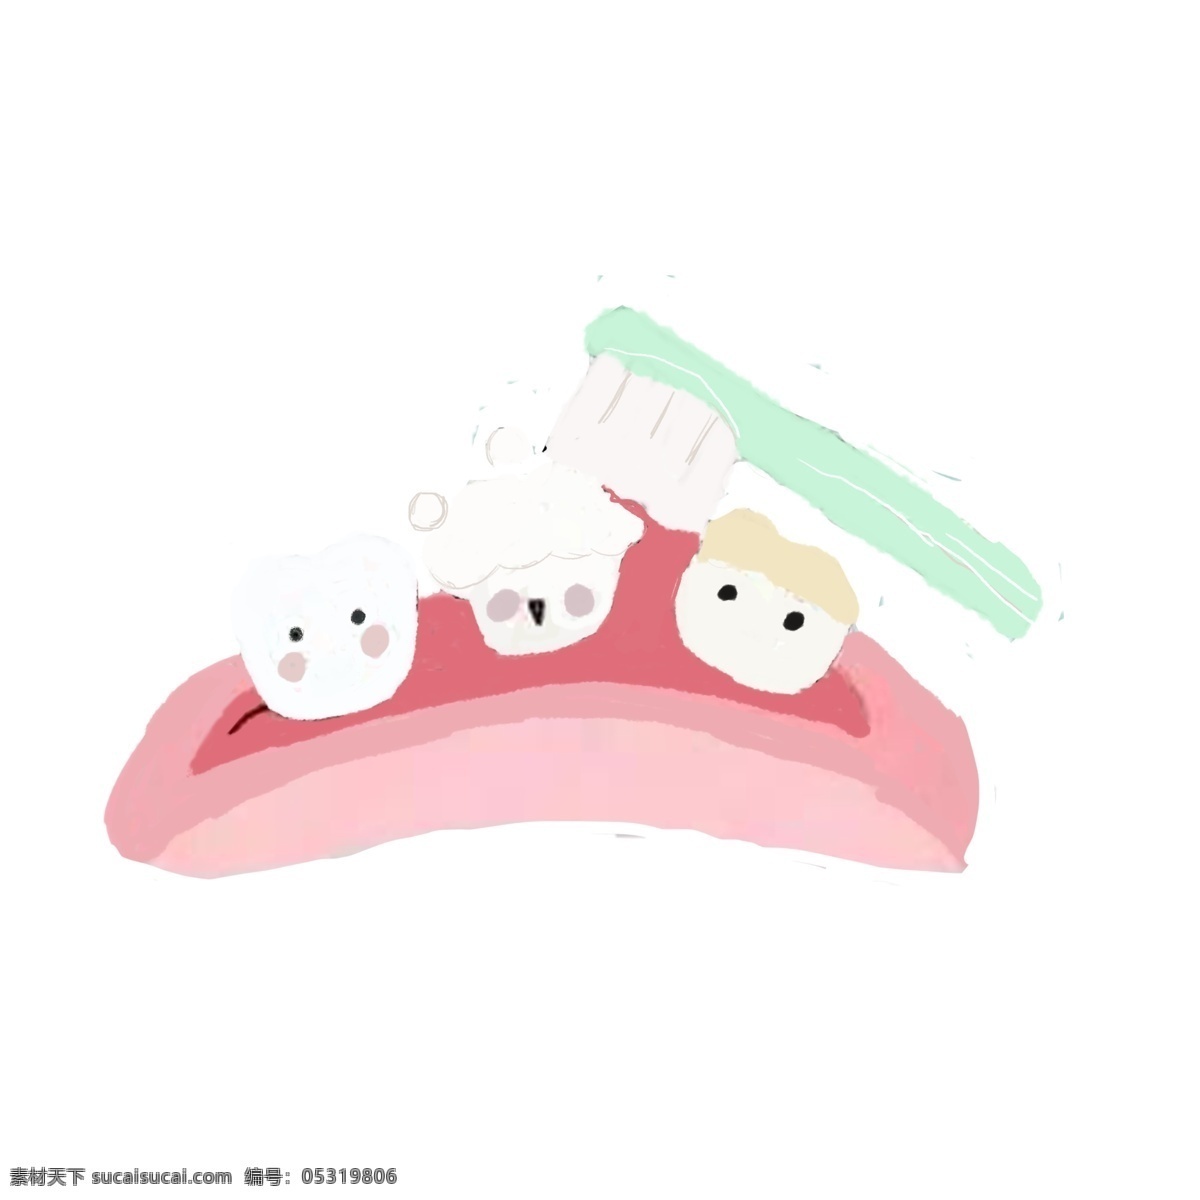 国际 爱 牙 日 原创 商用 元素 刷牙 牙齿 牙刷 牙膏泡泡 嘴巴